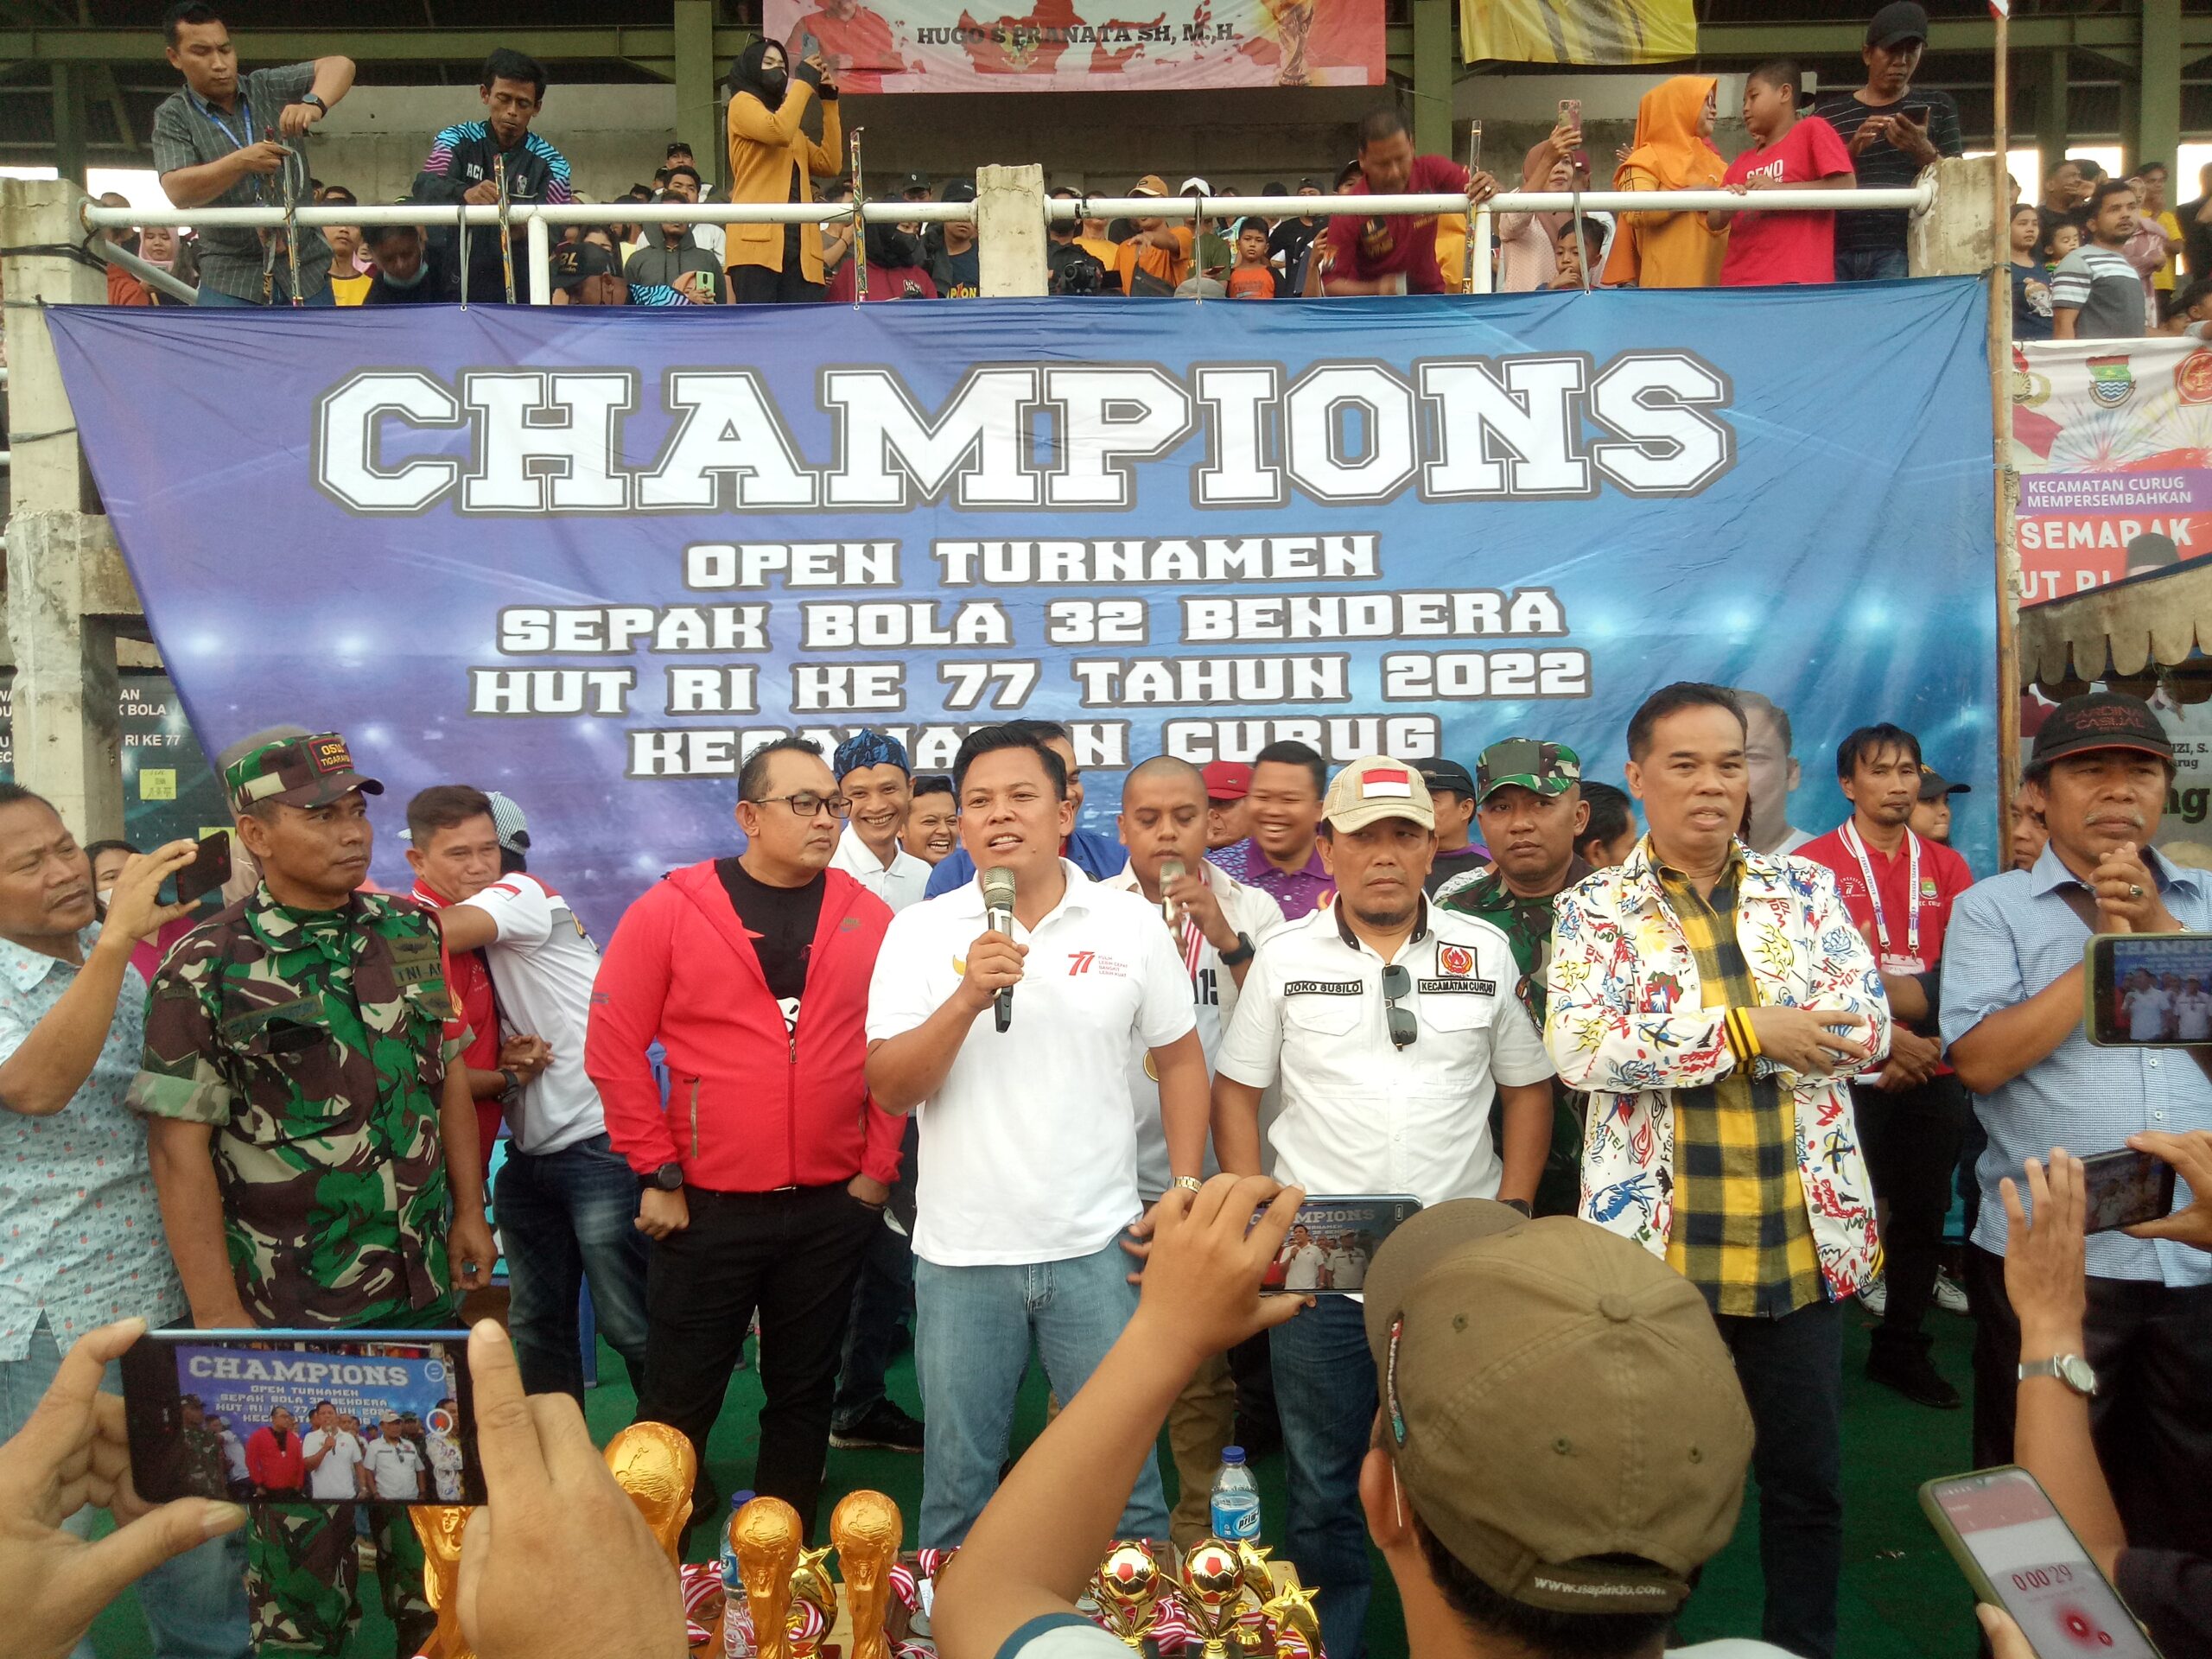 Tampak Camat Curug Supriyadi saat memberikan sambutannya di final Champions di Stadion mini Kecamatan Curug.